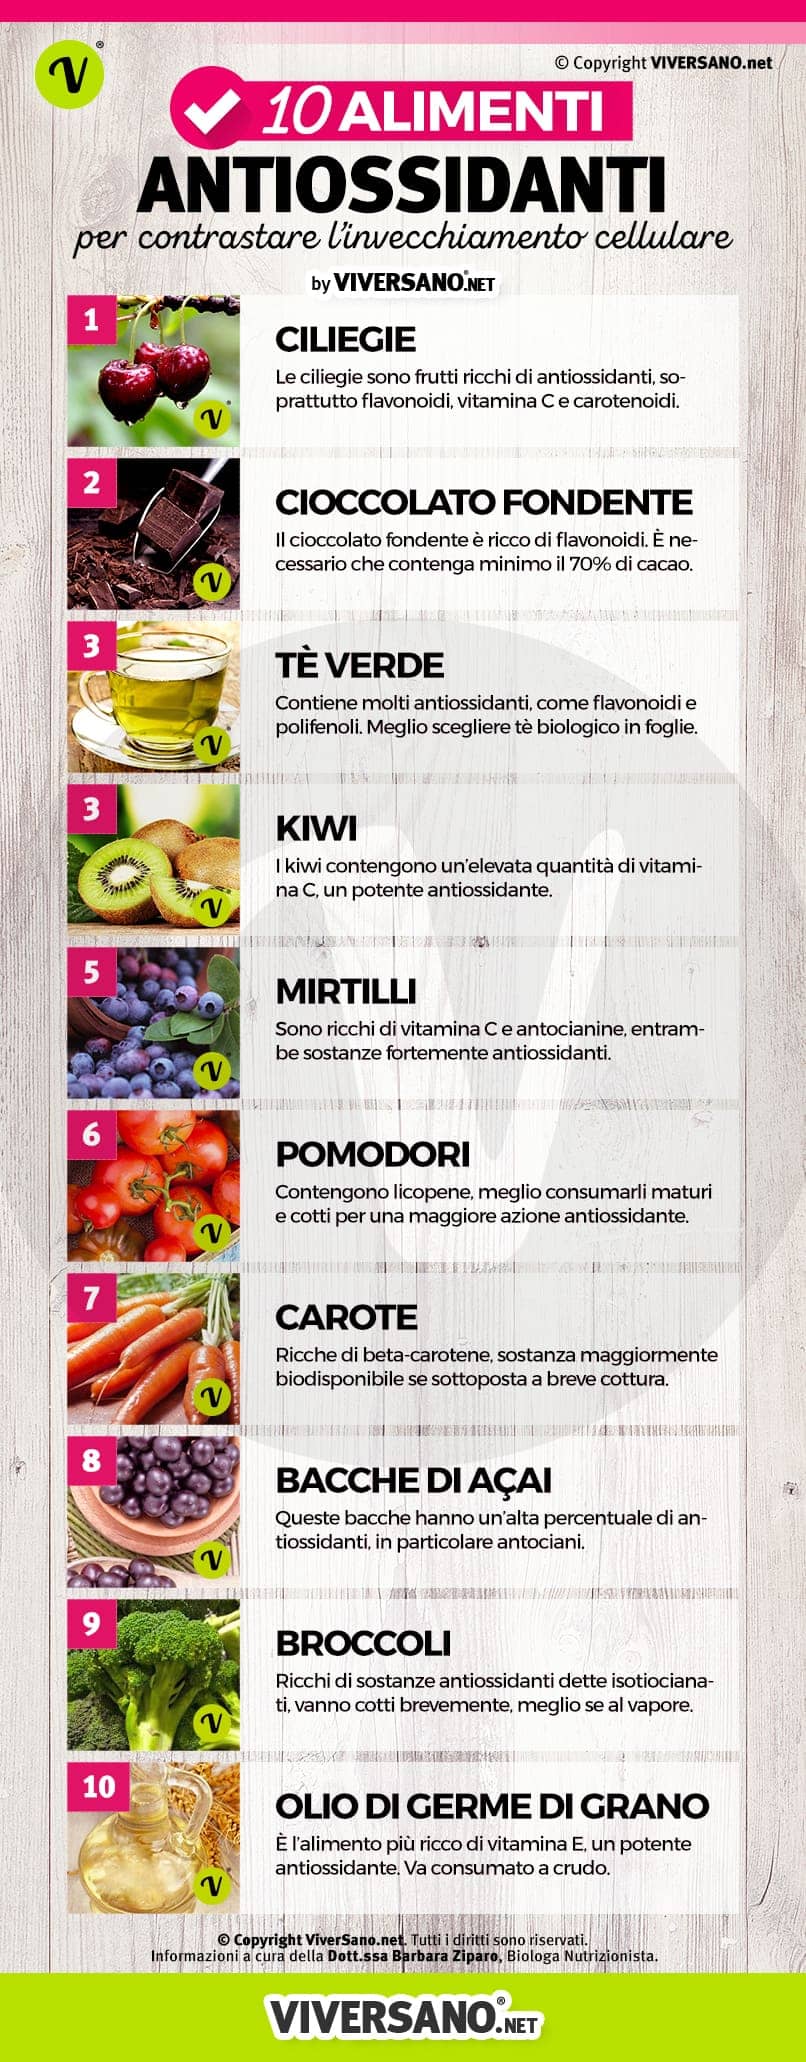 Alimentos antioxidantes: os 10 mais eficazes